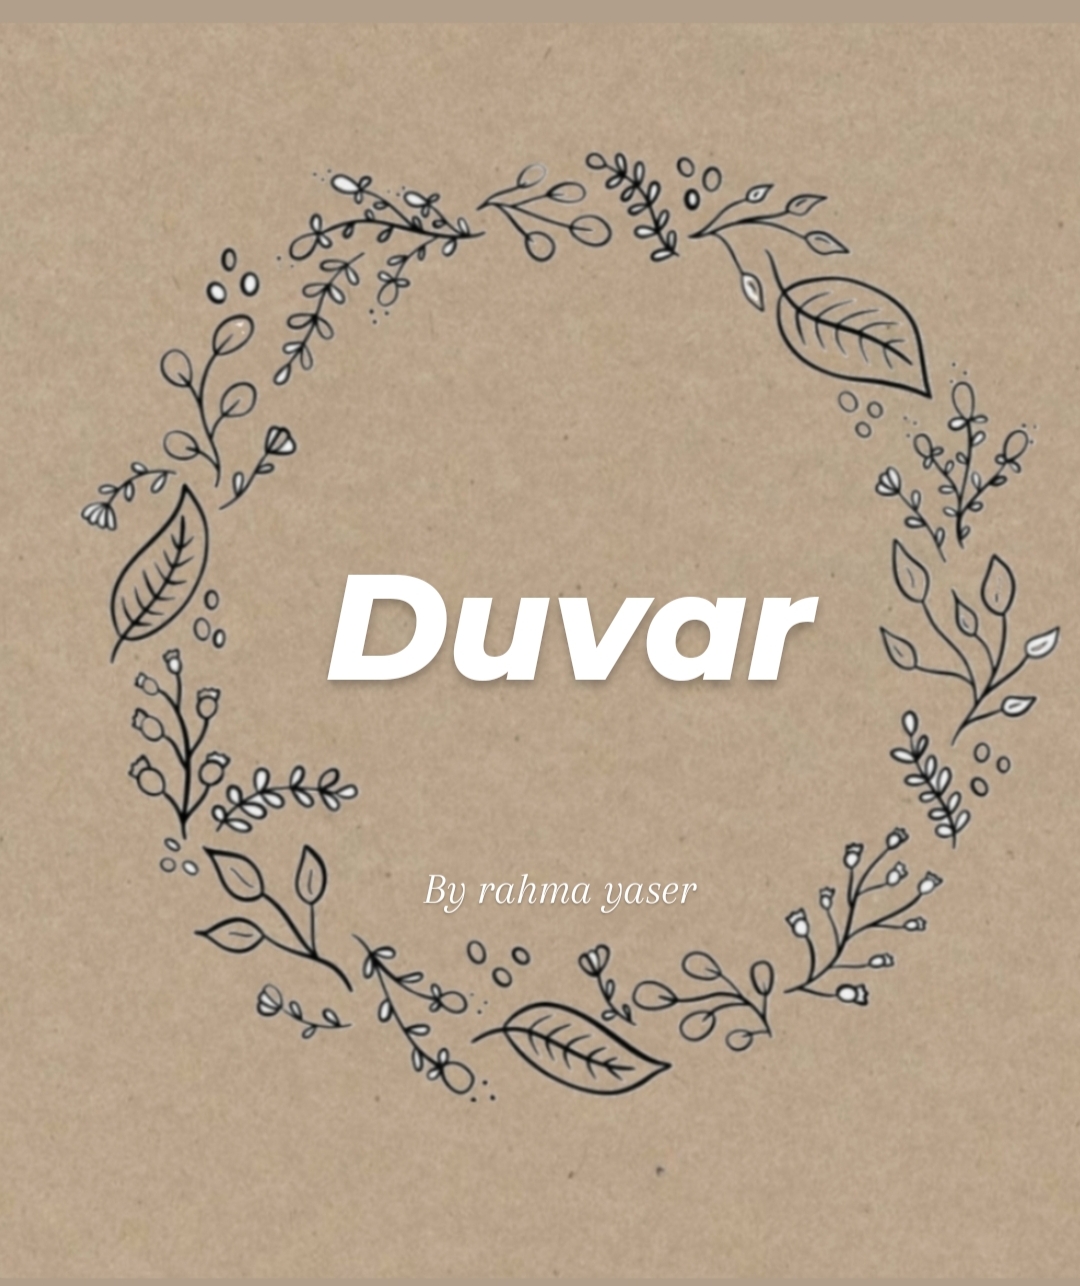 Duvar_logo